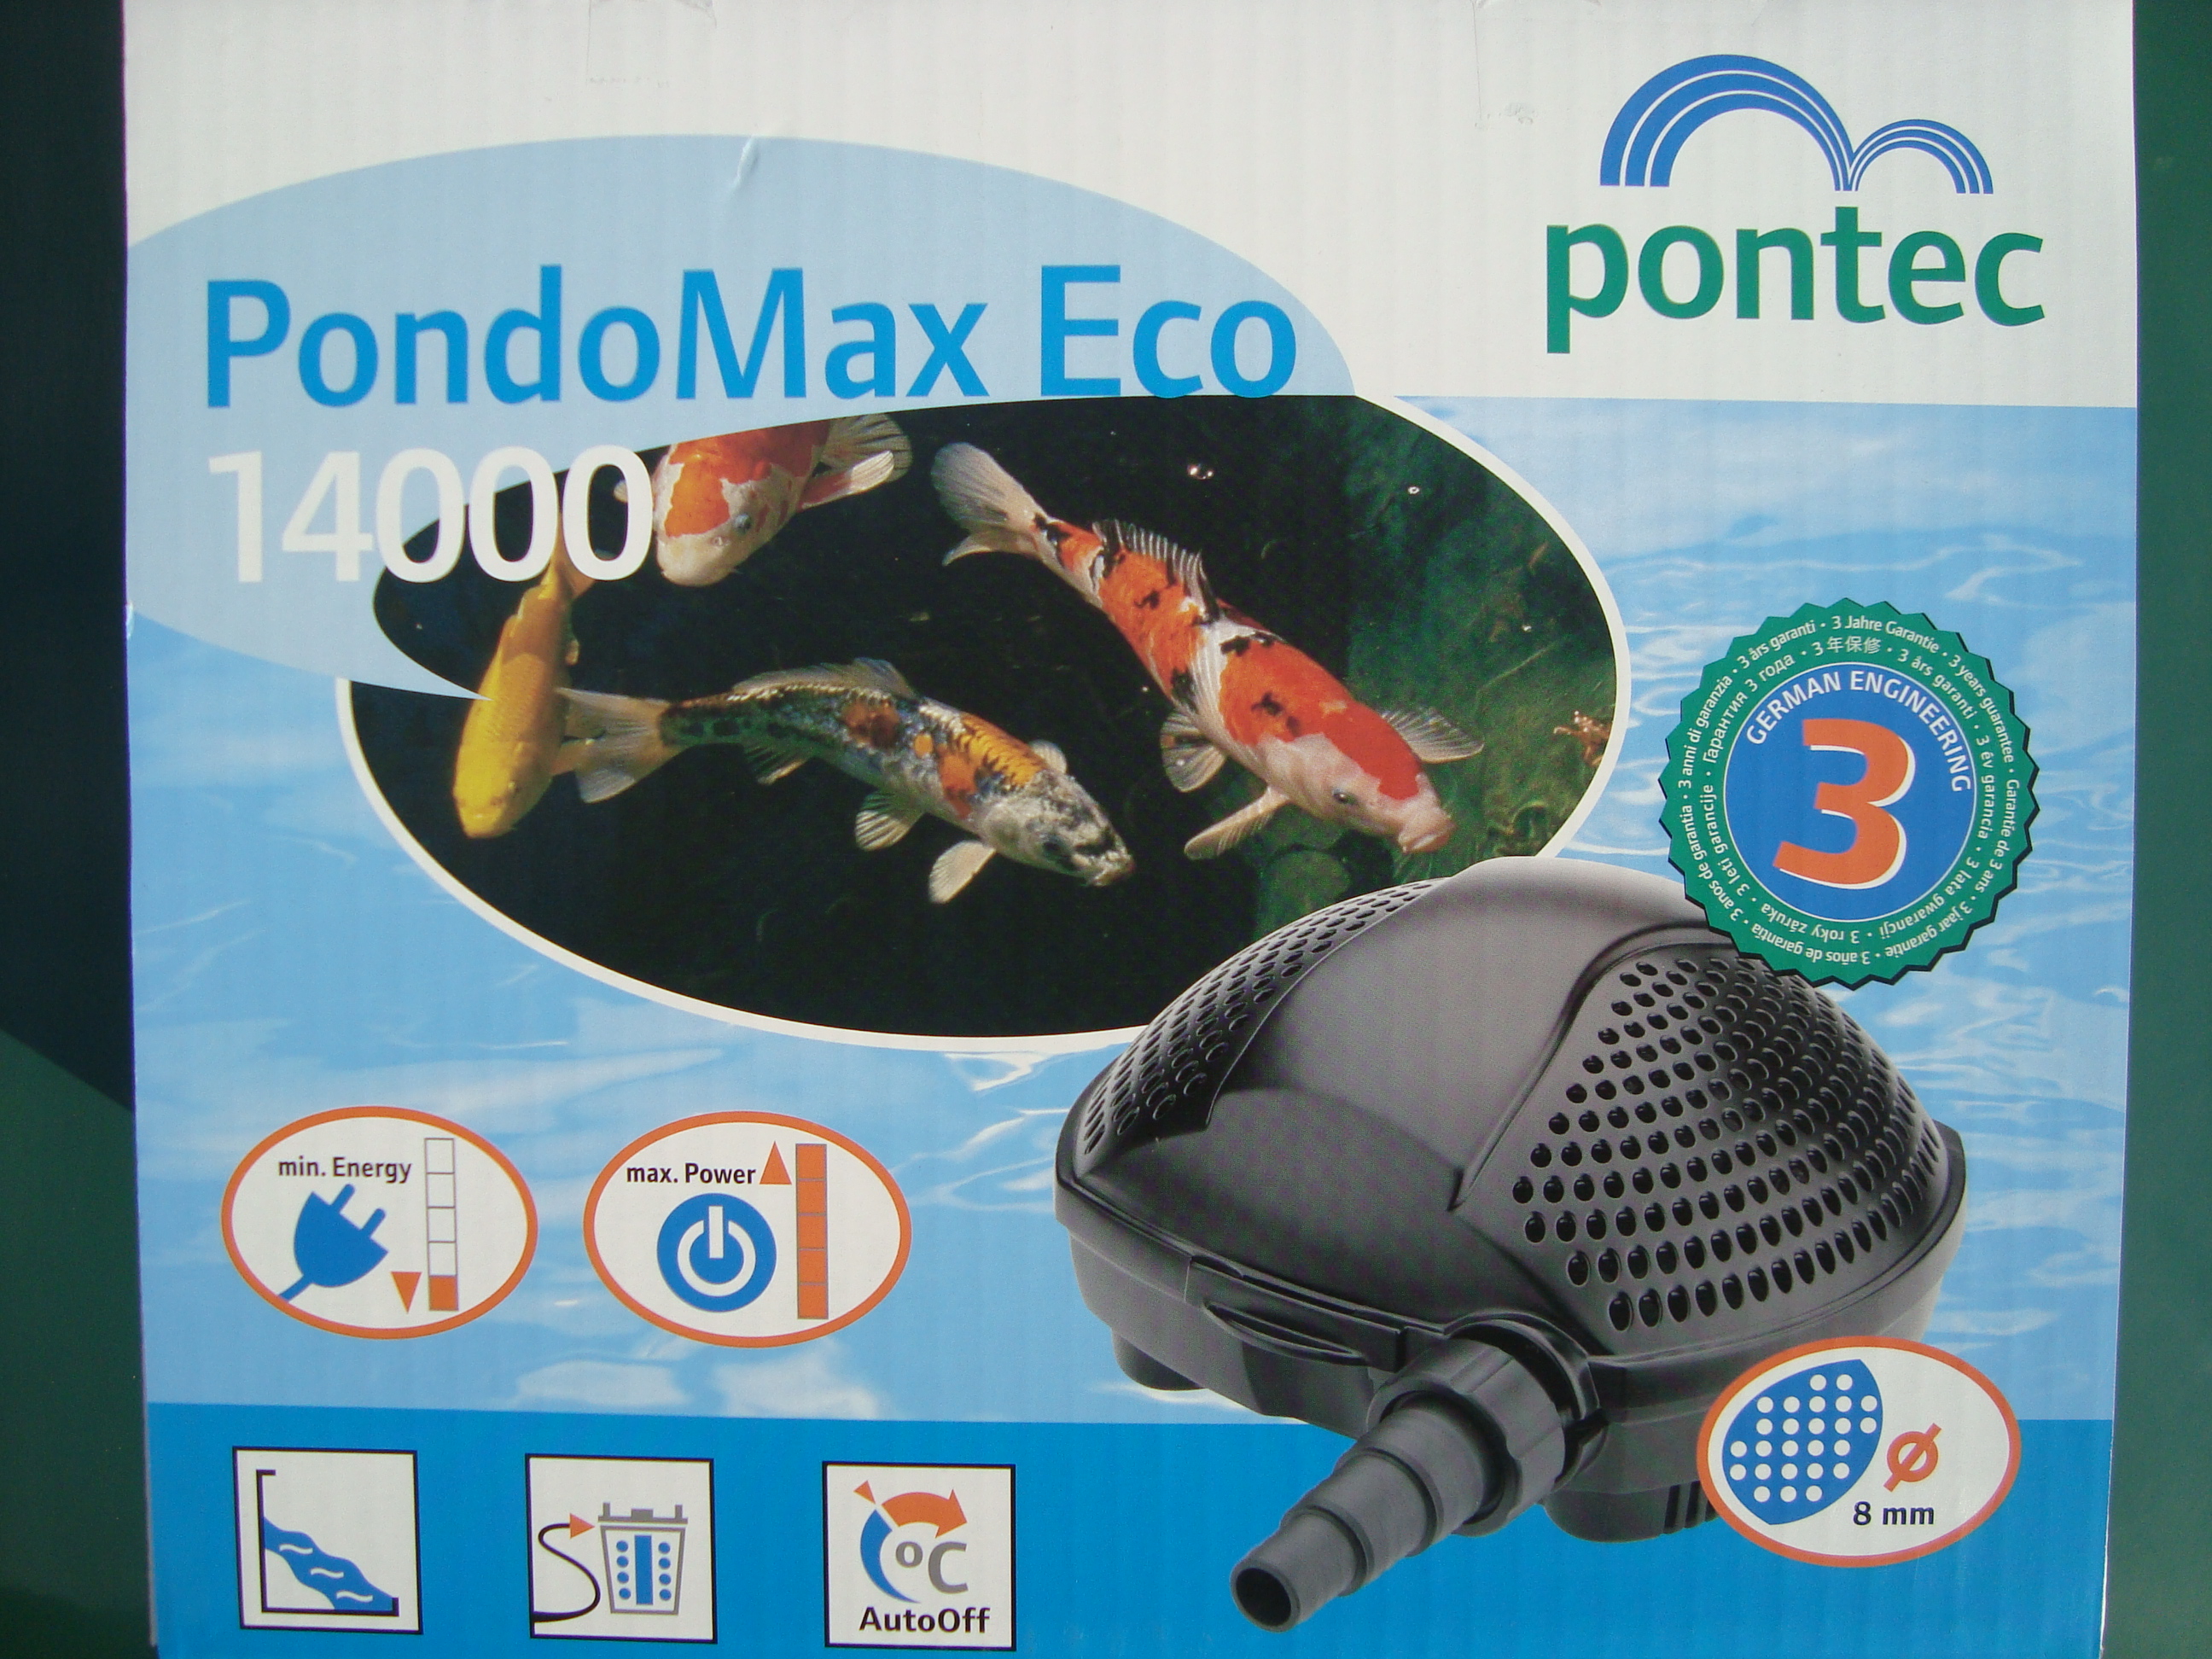 Jazierkové č. Pontec Pondomax Eco17000 cena 184€ s DPH